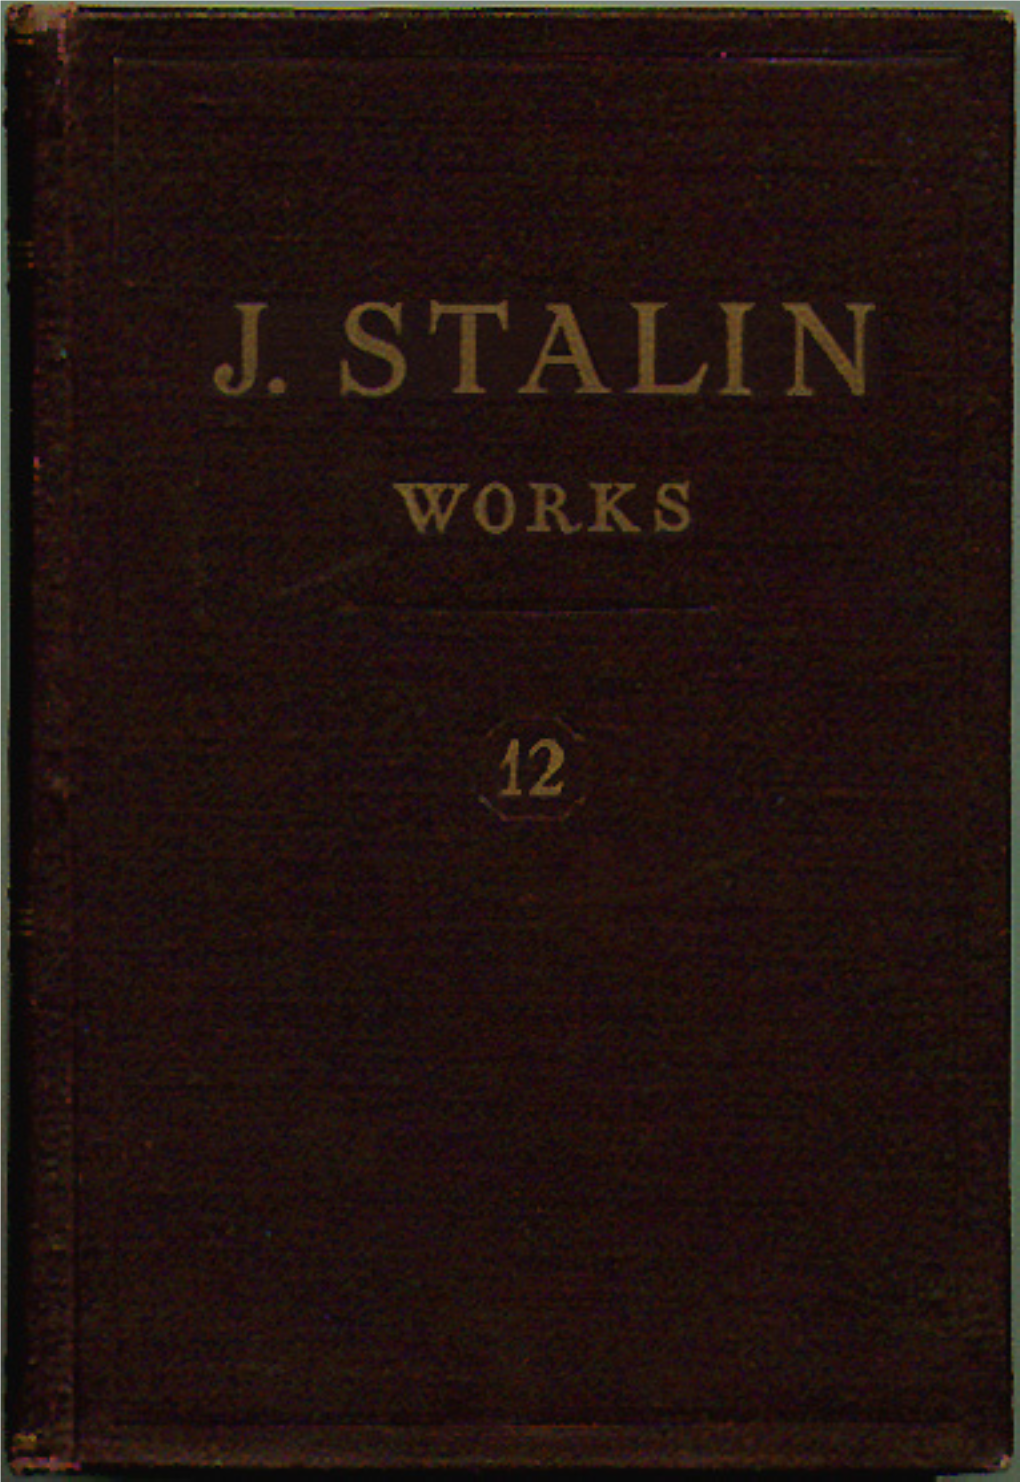 J. Stalin — Works, Vol. 12